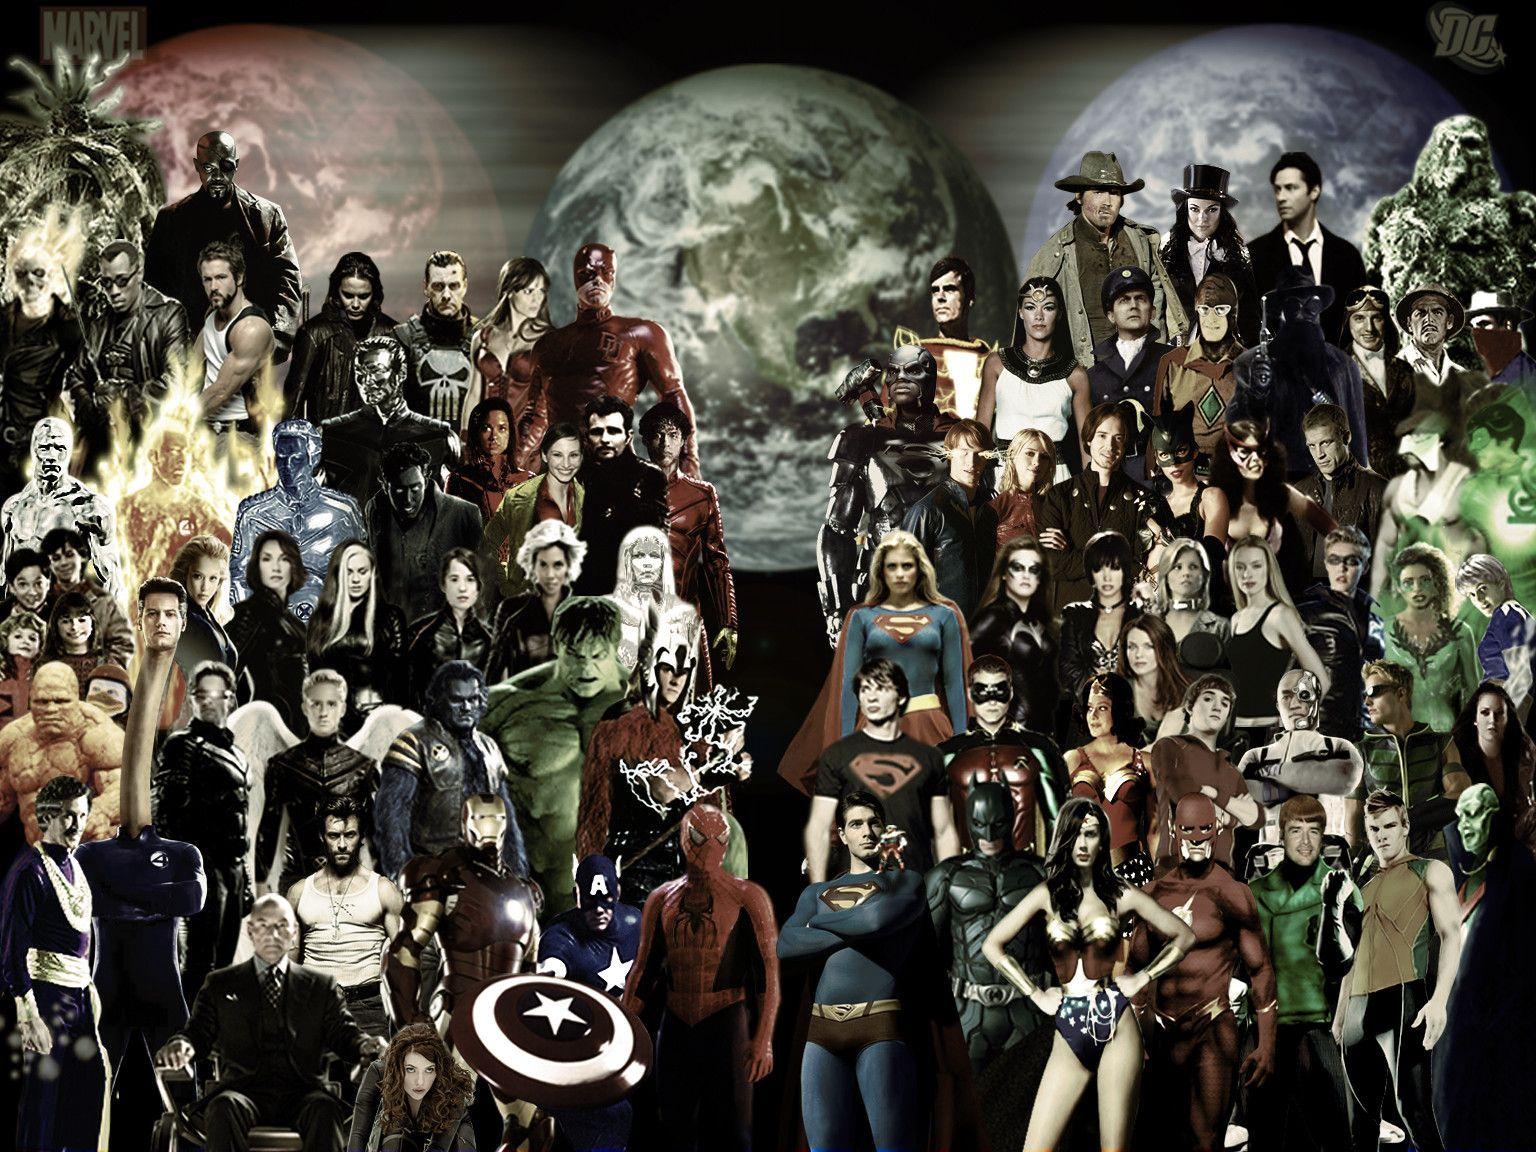 image For > Marvel Superhero Wallpaper